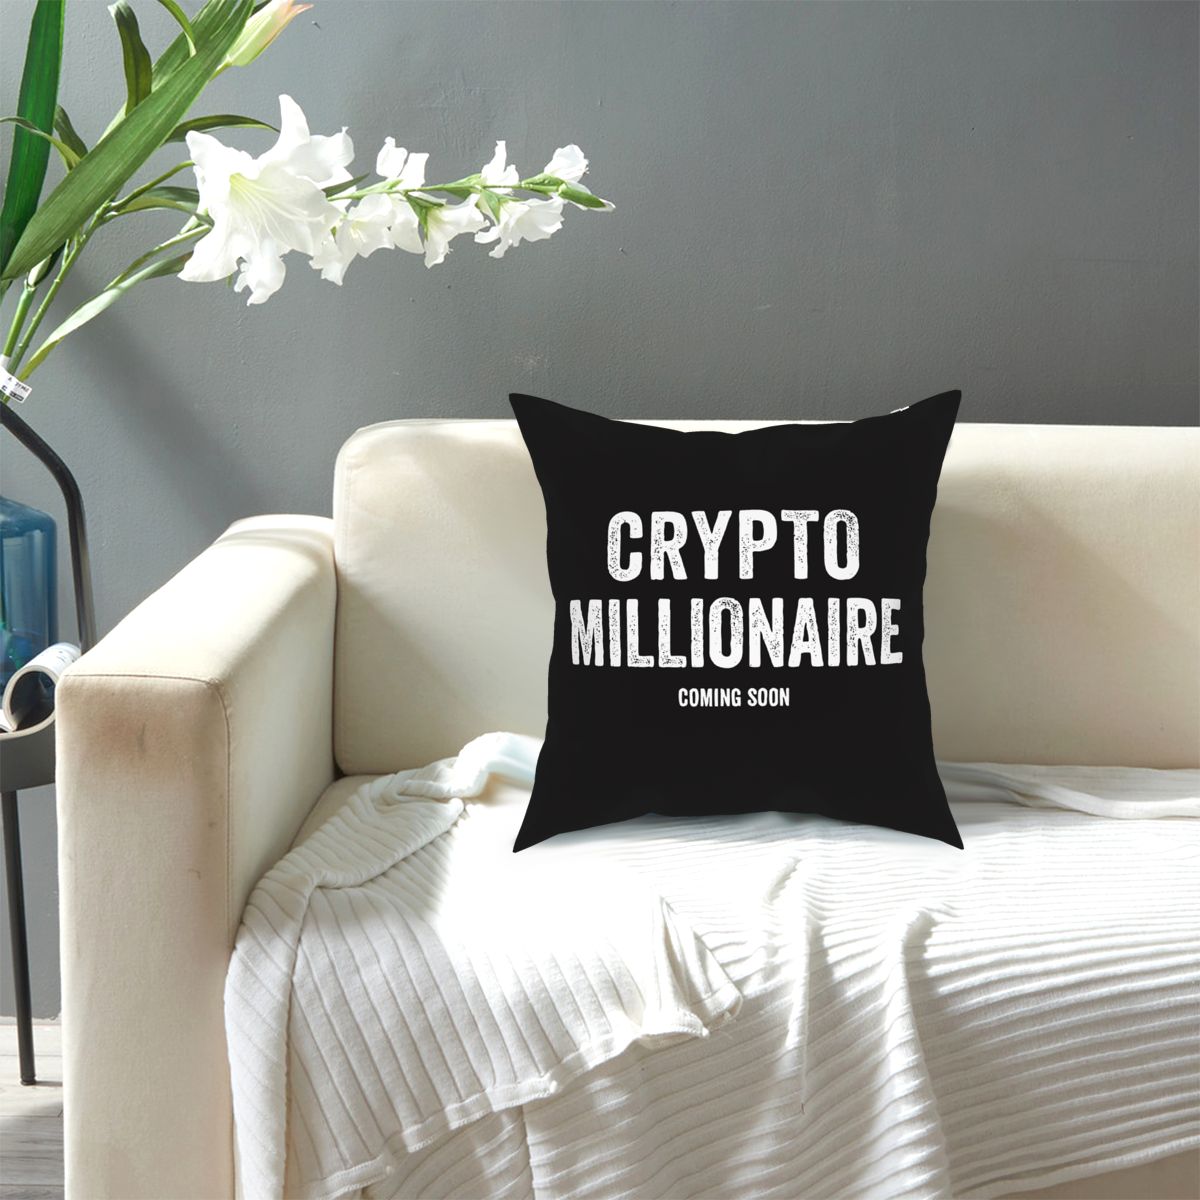 Crypto Millionaire pillowcase